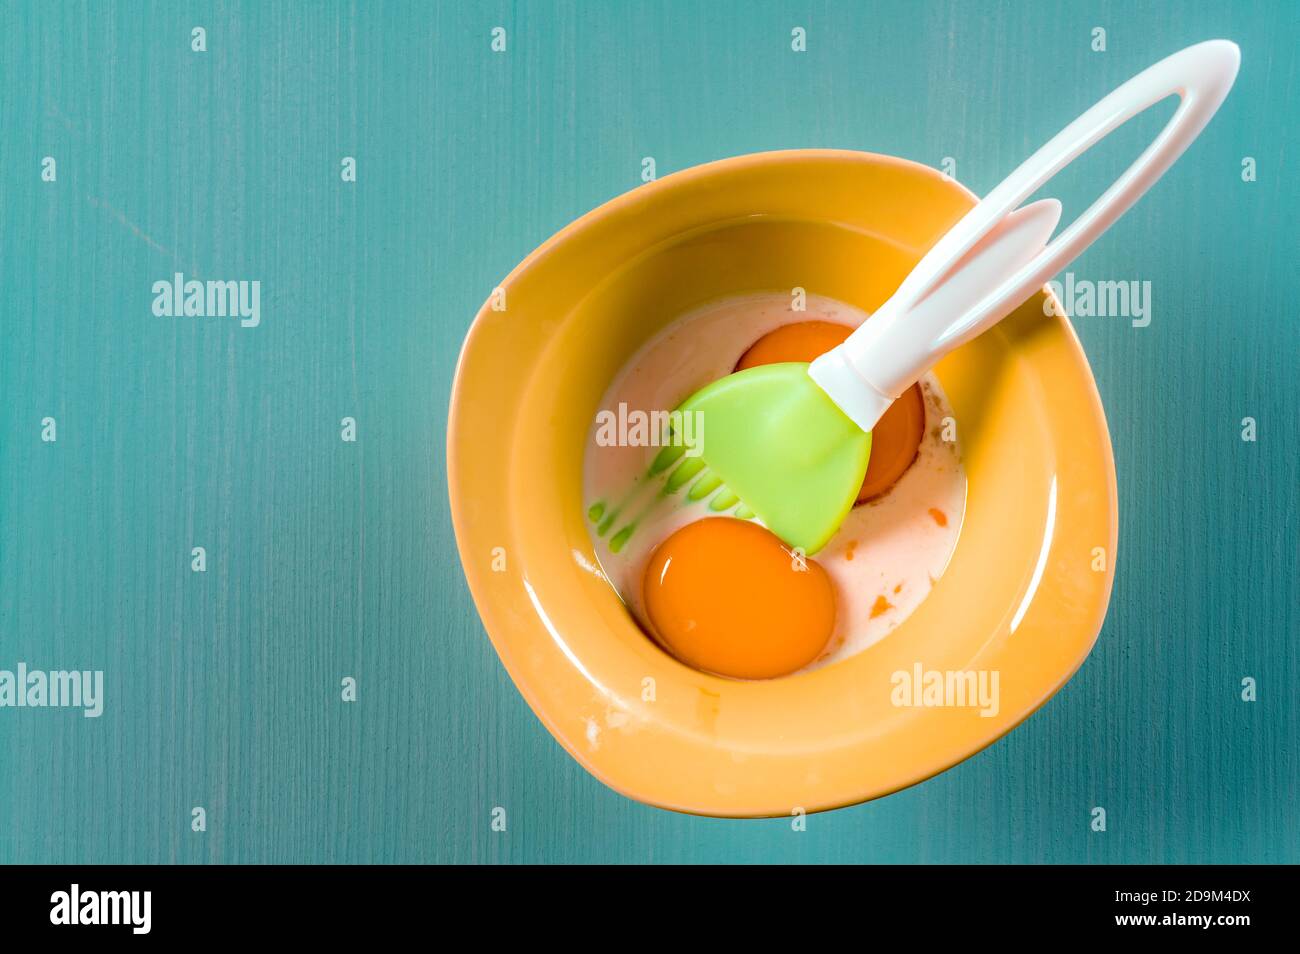 Vue de dessus du jaune d'œuf et du lait dans un bol avec une brosse à pâtisserie Banque D'Images